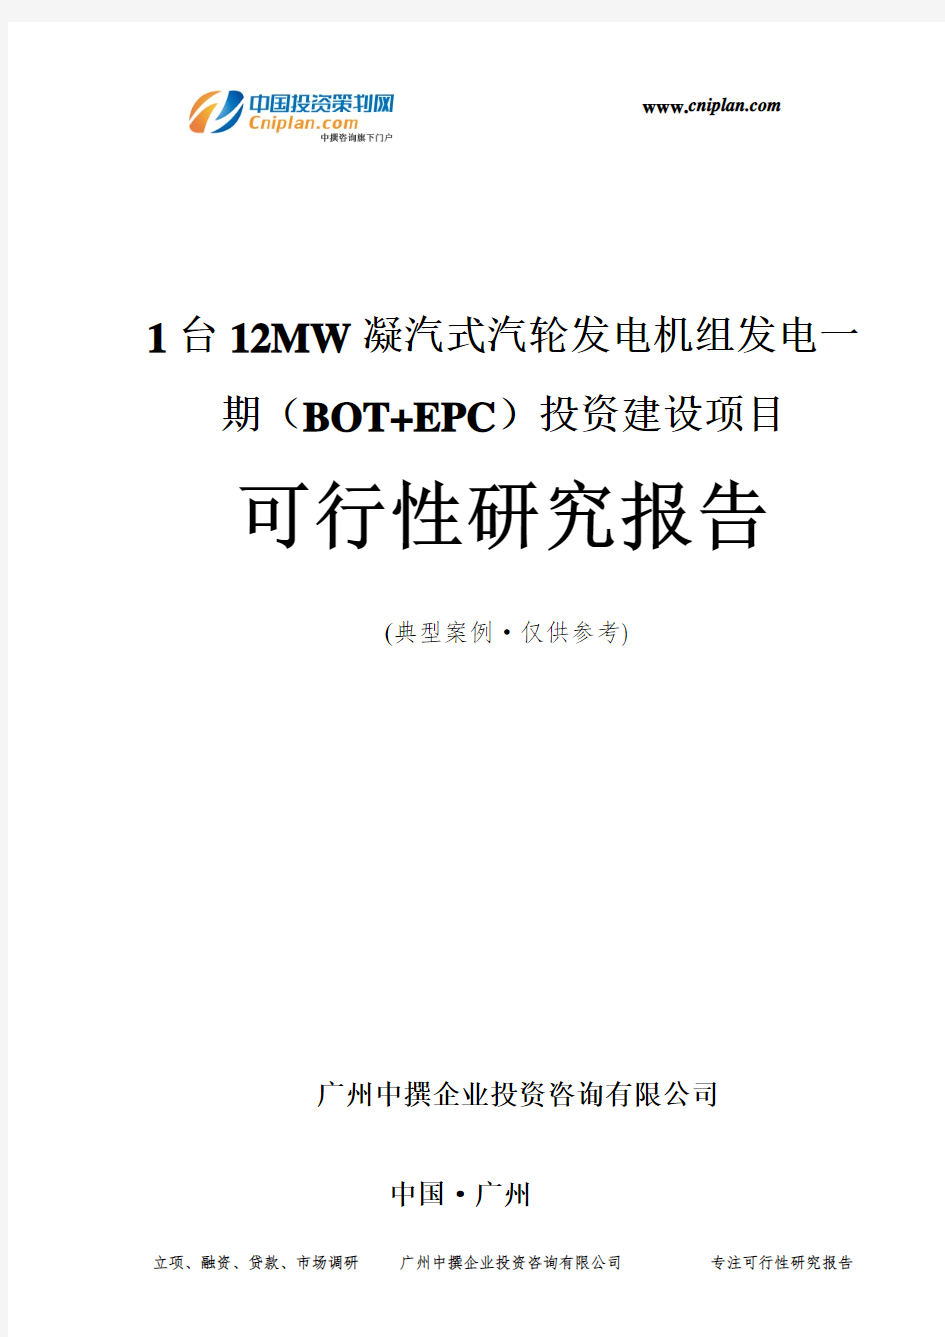 1台12MW凝汽式汽轮发电机组发电一期(BOT+EPC)投资建设项目可行性研究报告-广州中撰咨询